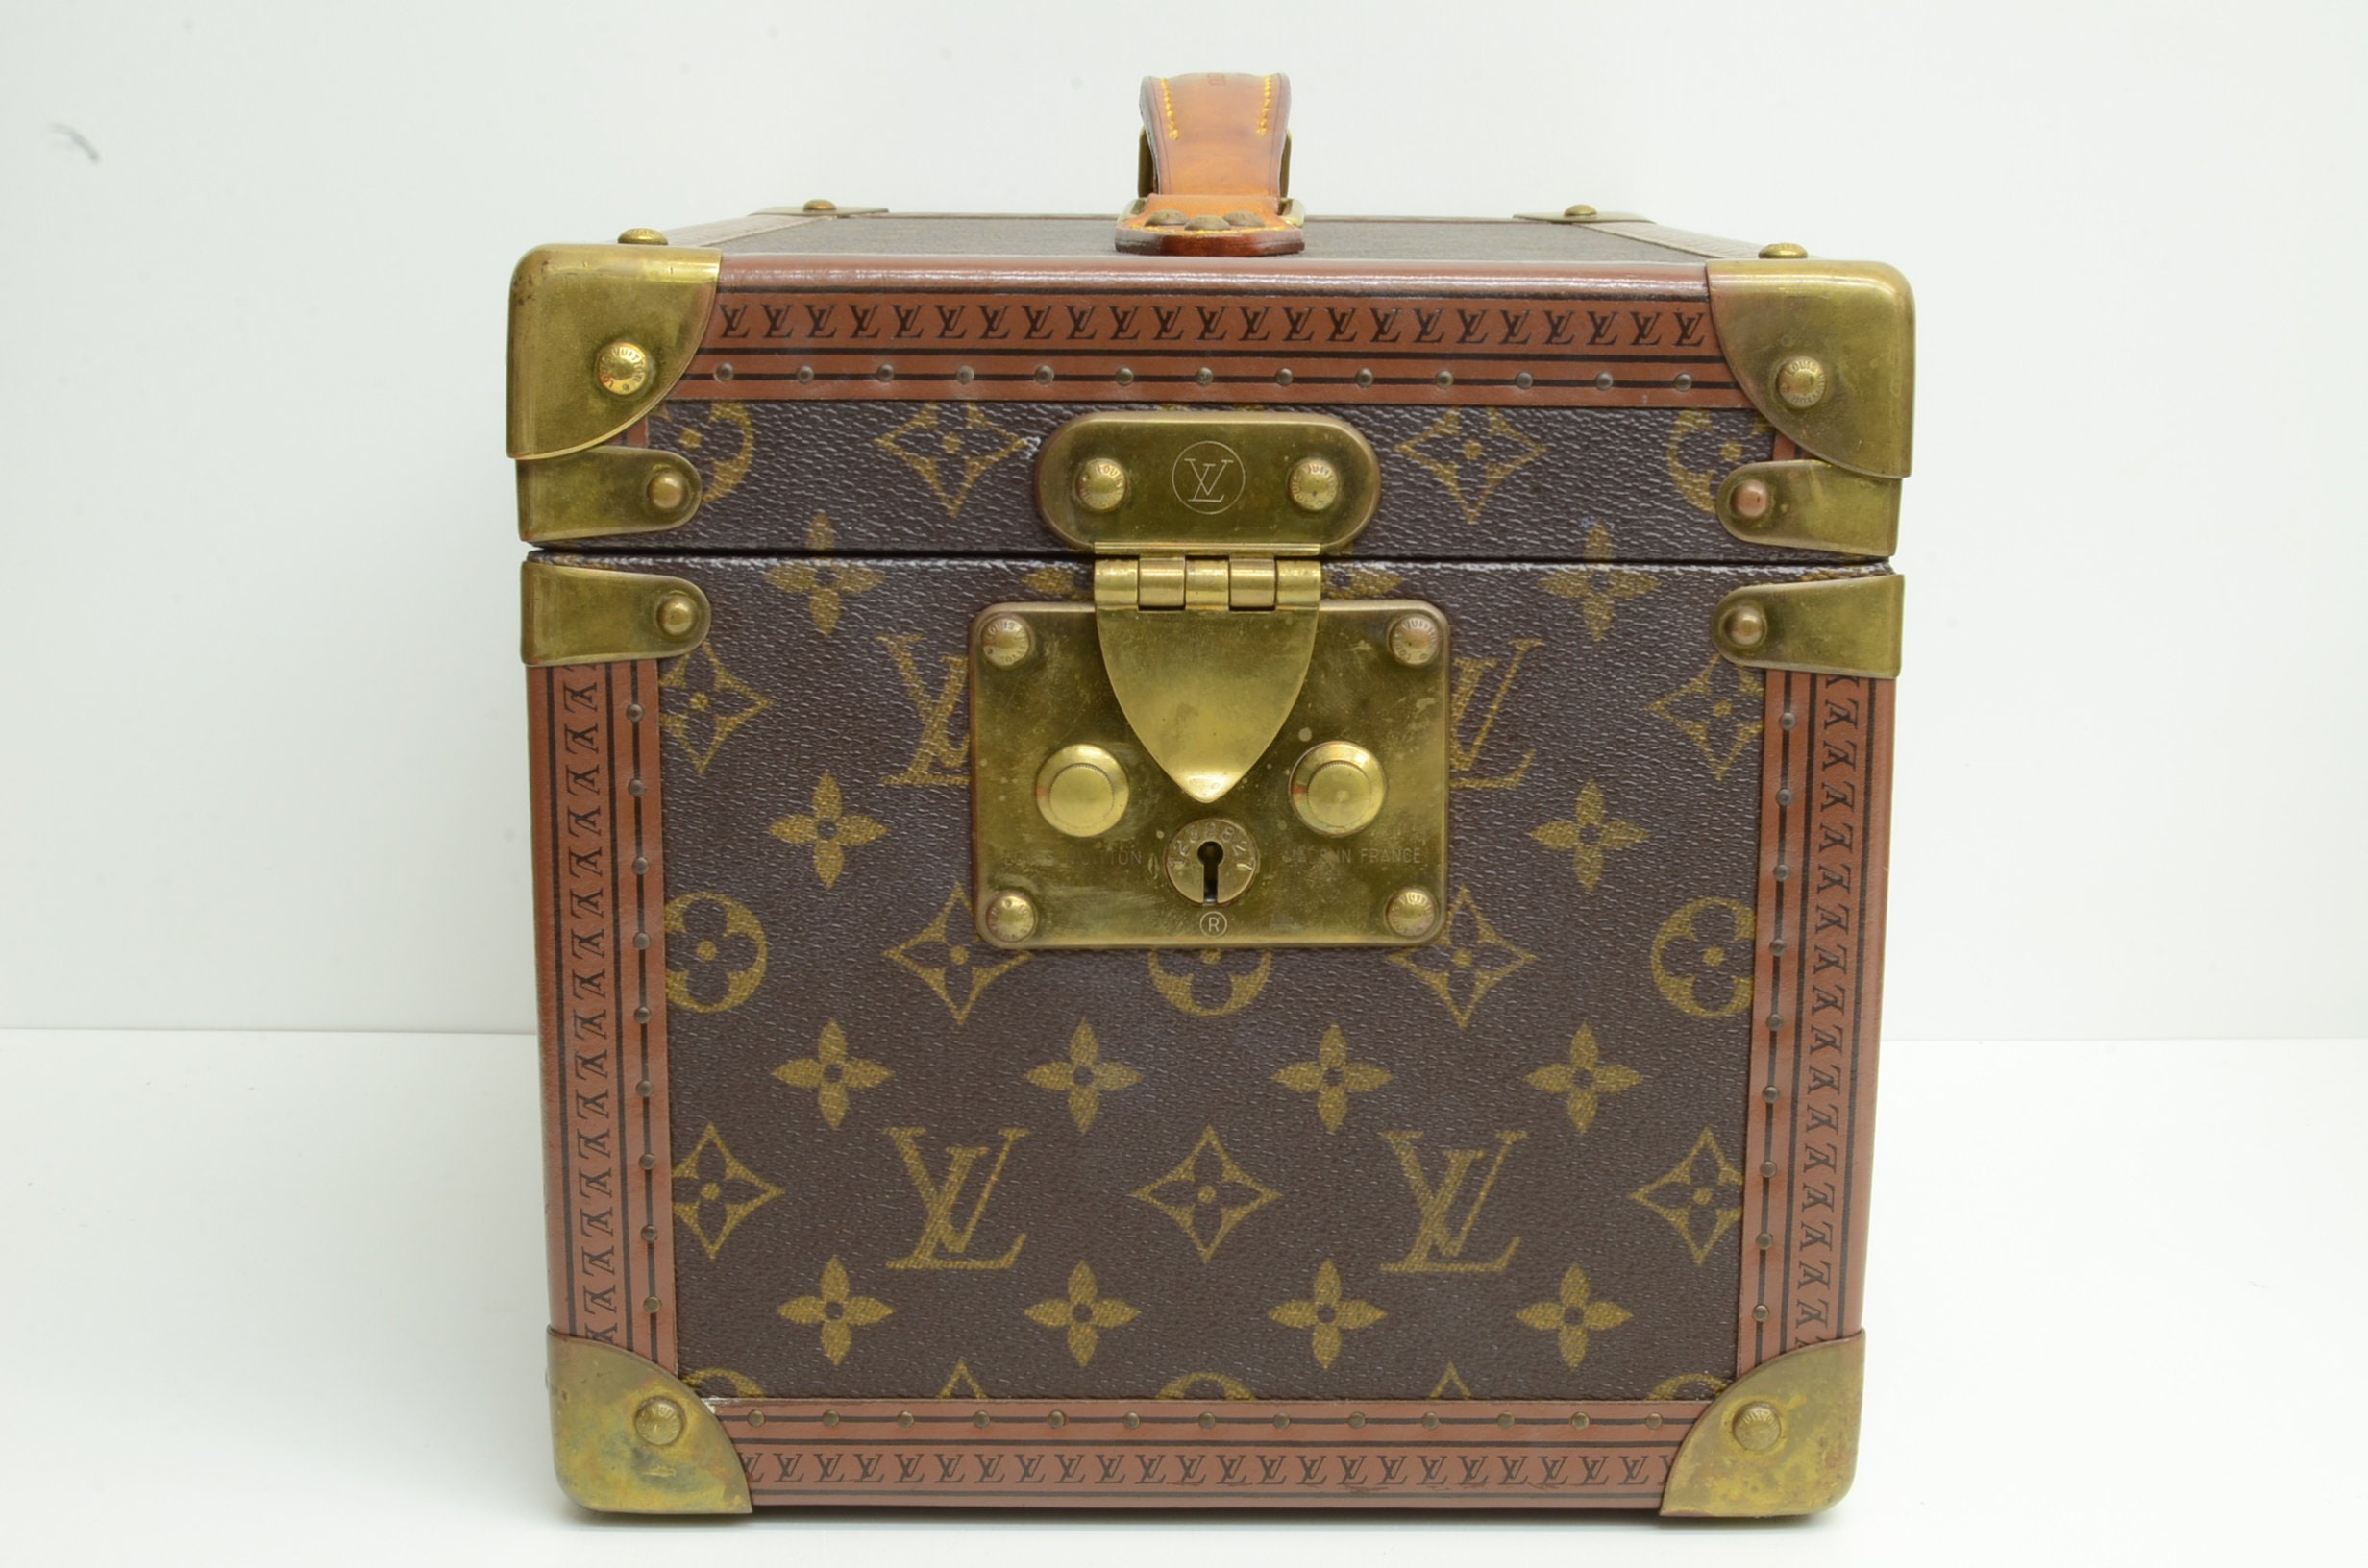 Sold at Auction: LOUIS VUITTON VINTAGE Vanity Case, 60er Jahre.